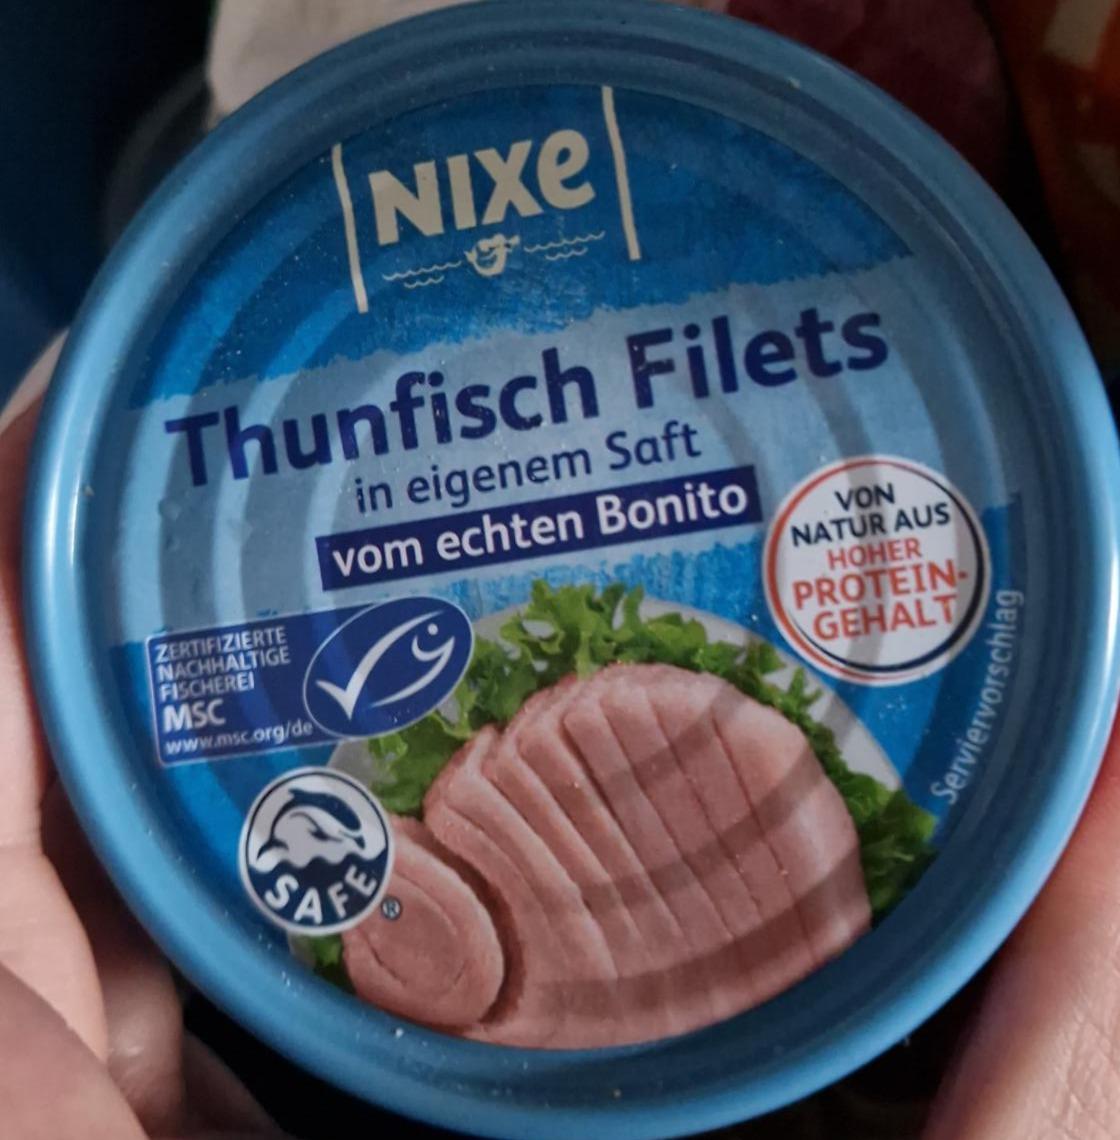 Fotografie - Thunfisch Filets in eigenen Saft vom echten Bonito Nixe